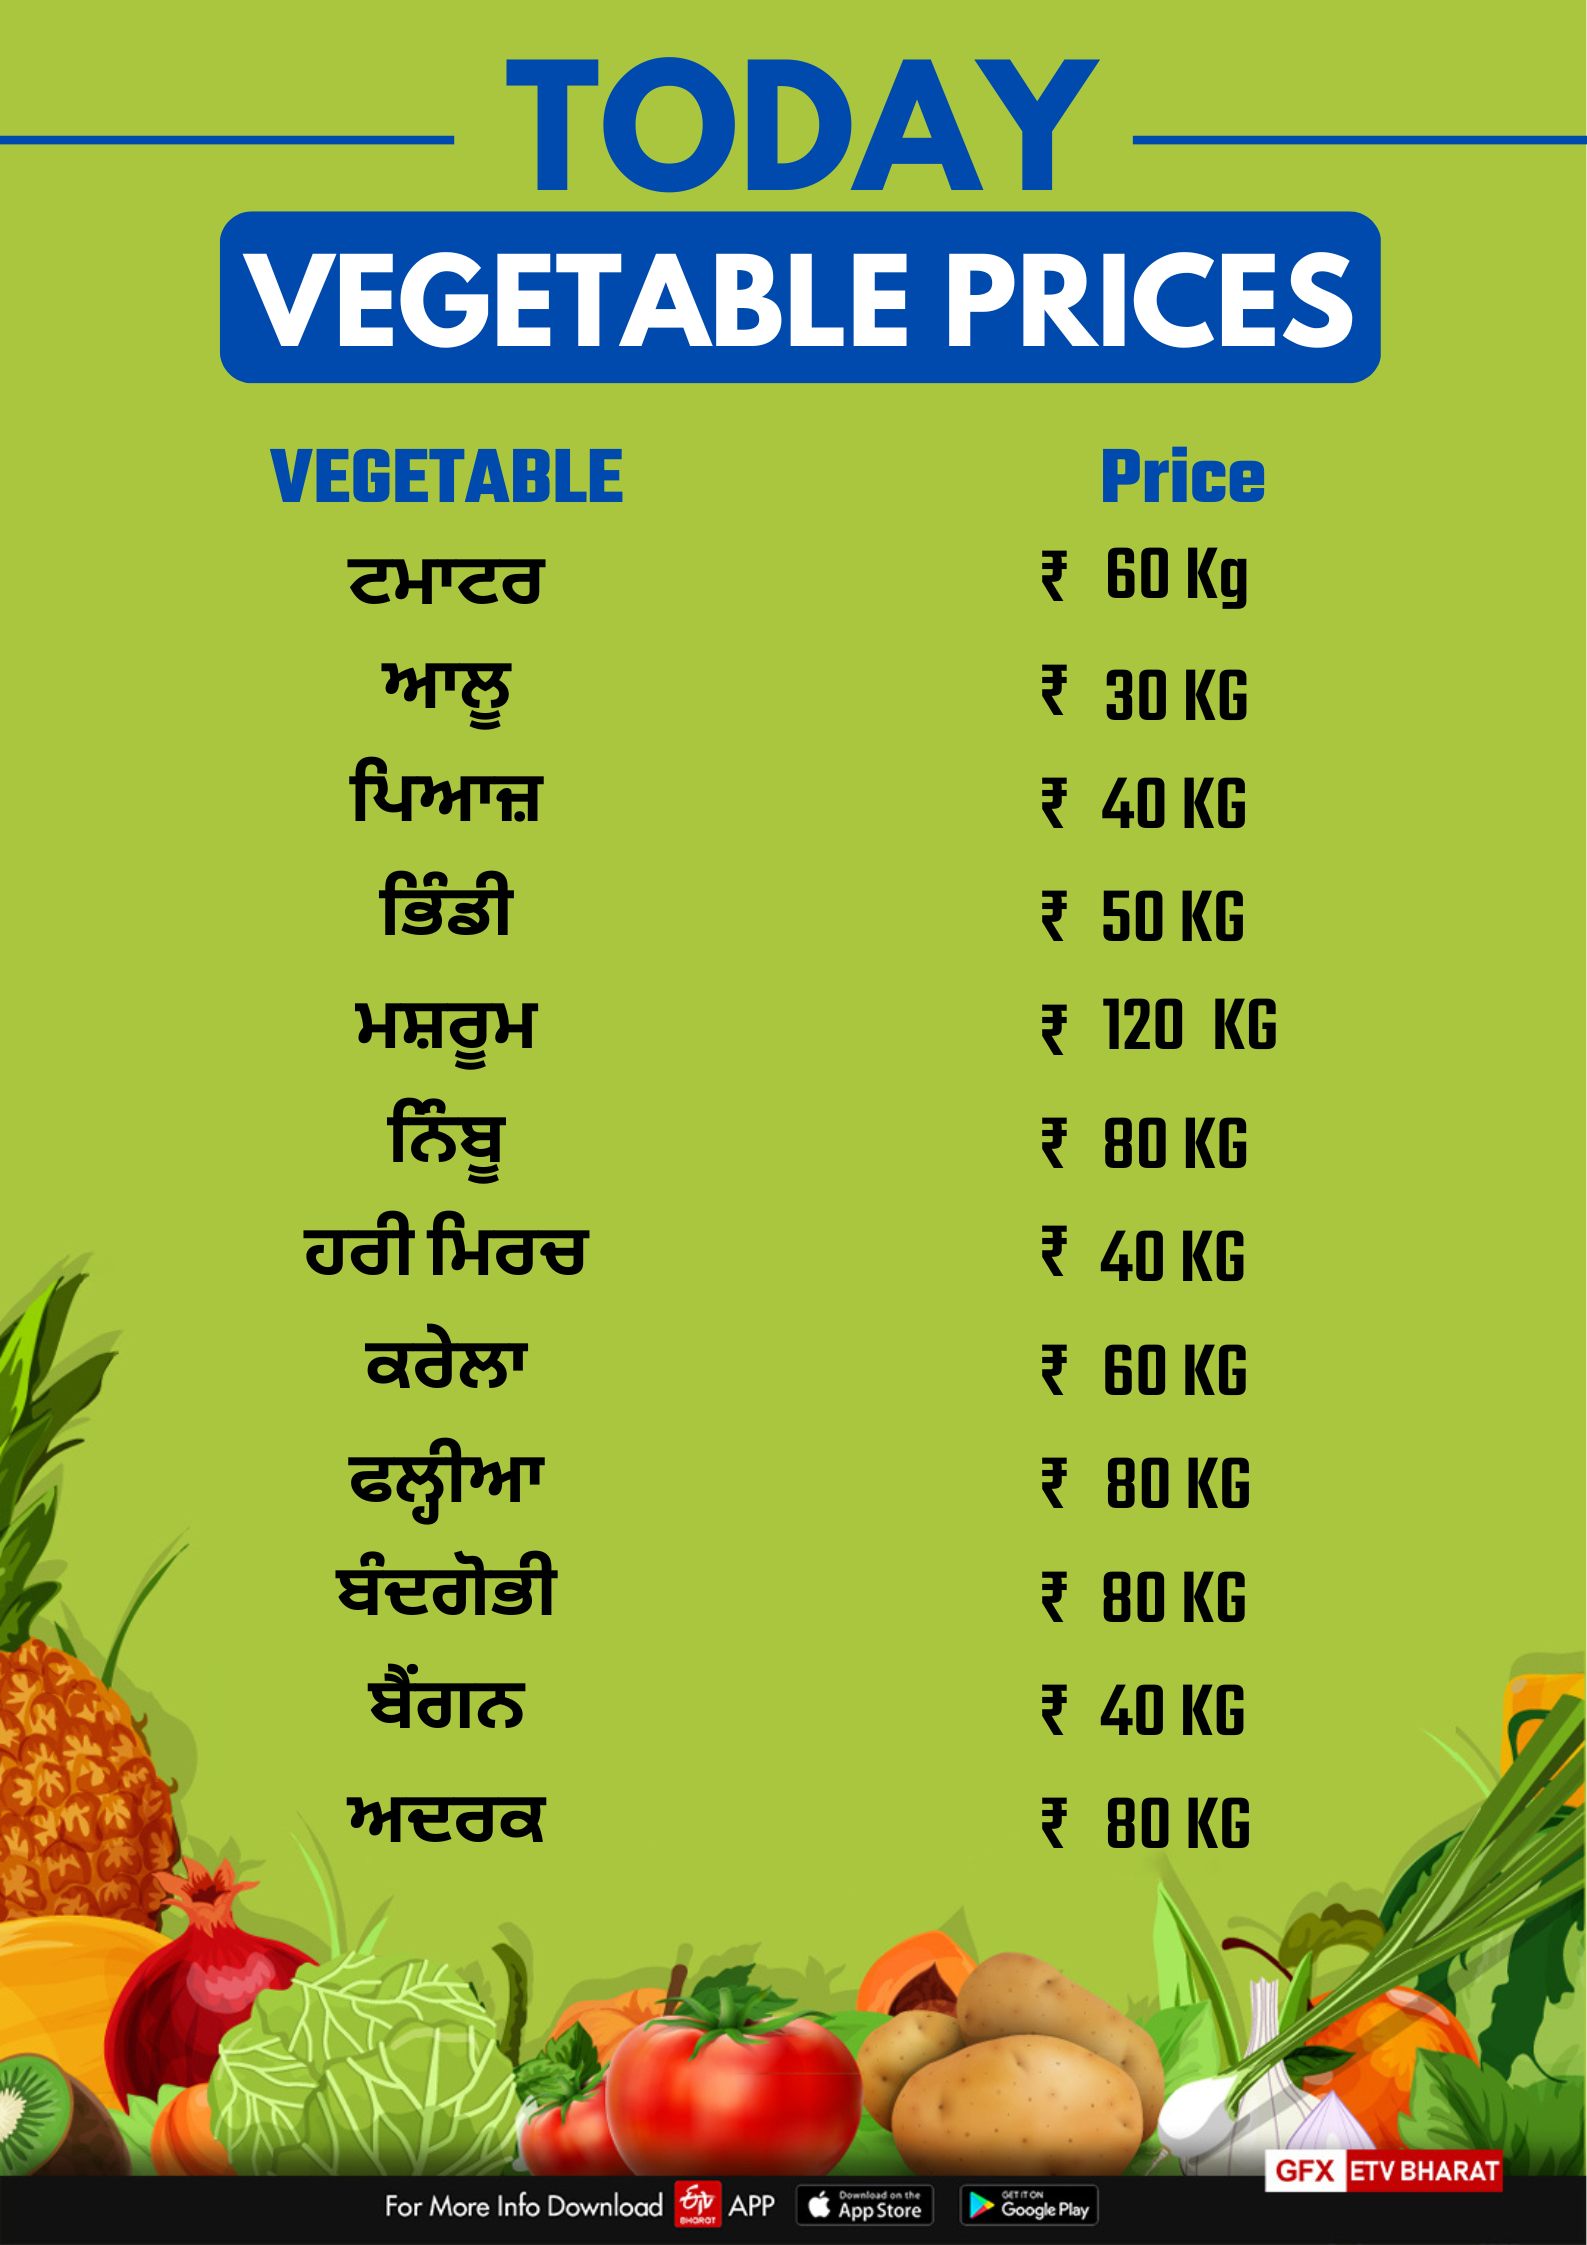 vegetables Rates: ਜਾਣੋ, ਪੰਜਾਬ ਵਿੱਚ ਸਬਜੀਆਂ ਦੀਆਂ ਕੀਮਤਾਂ